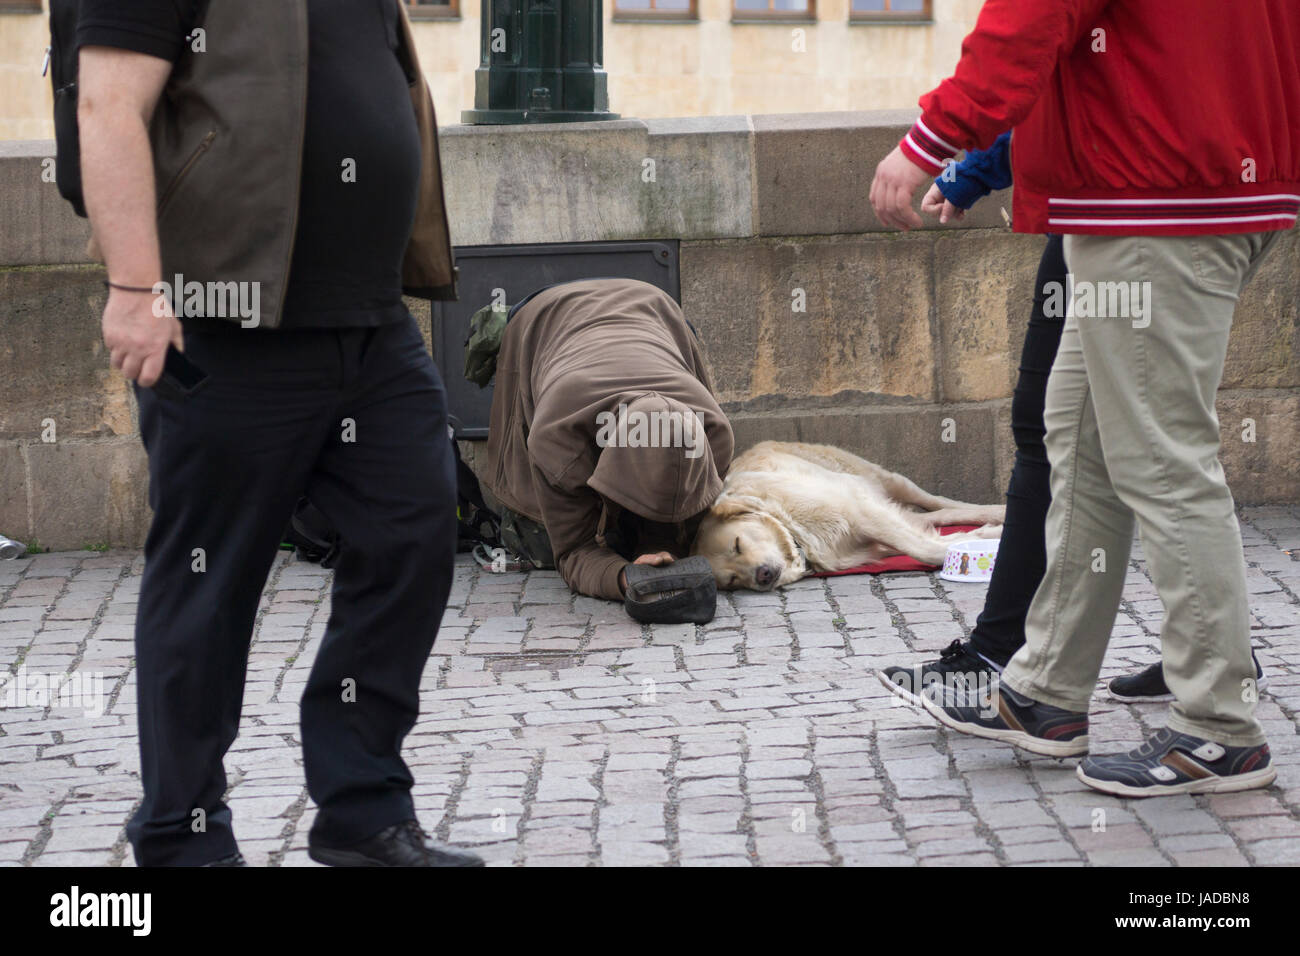 Les gens qui marchent devant un mendiant et son chien à Prague, en République tchèque. Concept: Sans-abri en Europe, mendiant, pauvreté, personne en faillite, personnes ignorant Banque D'Images